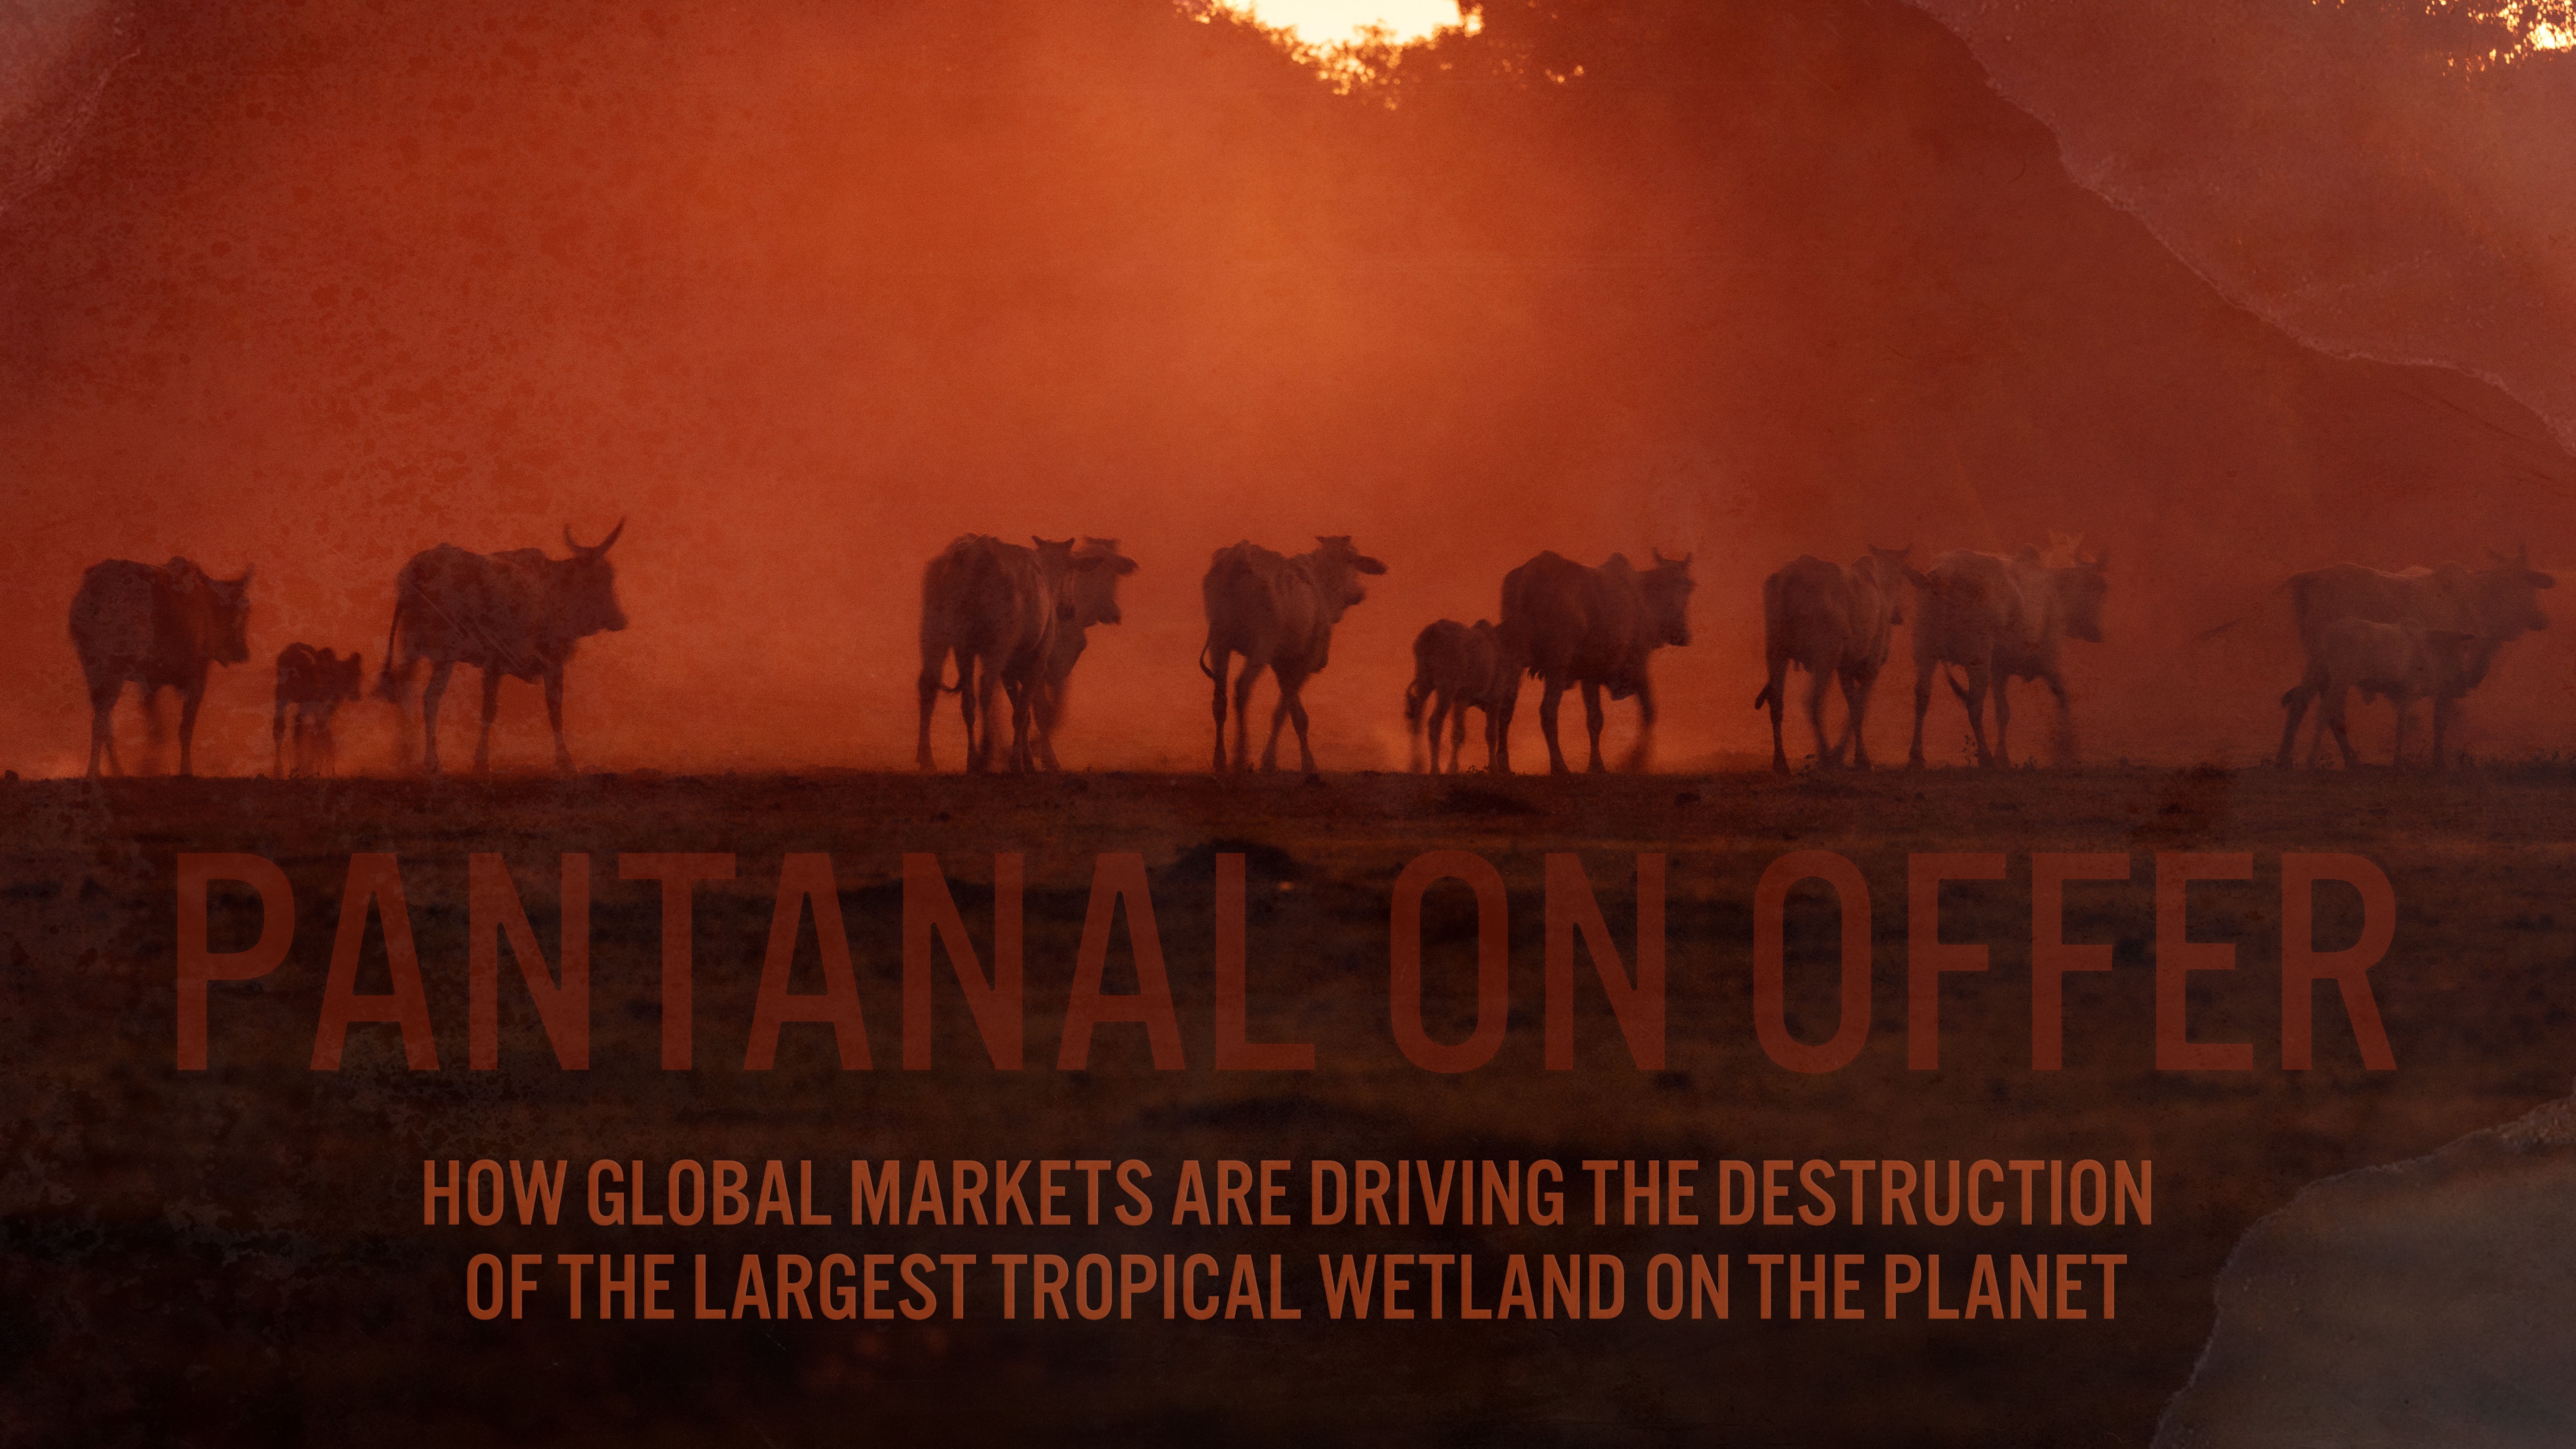 „Pantanal On Offer“: Wie die Klimakrise und globale Märkte das Pantanal zerstören